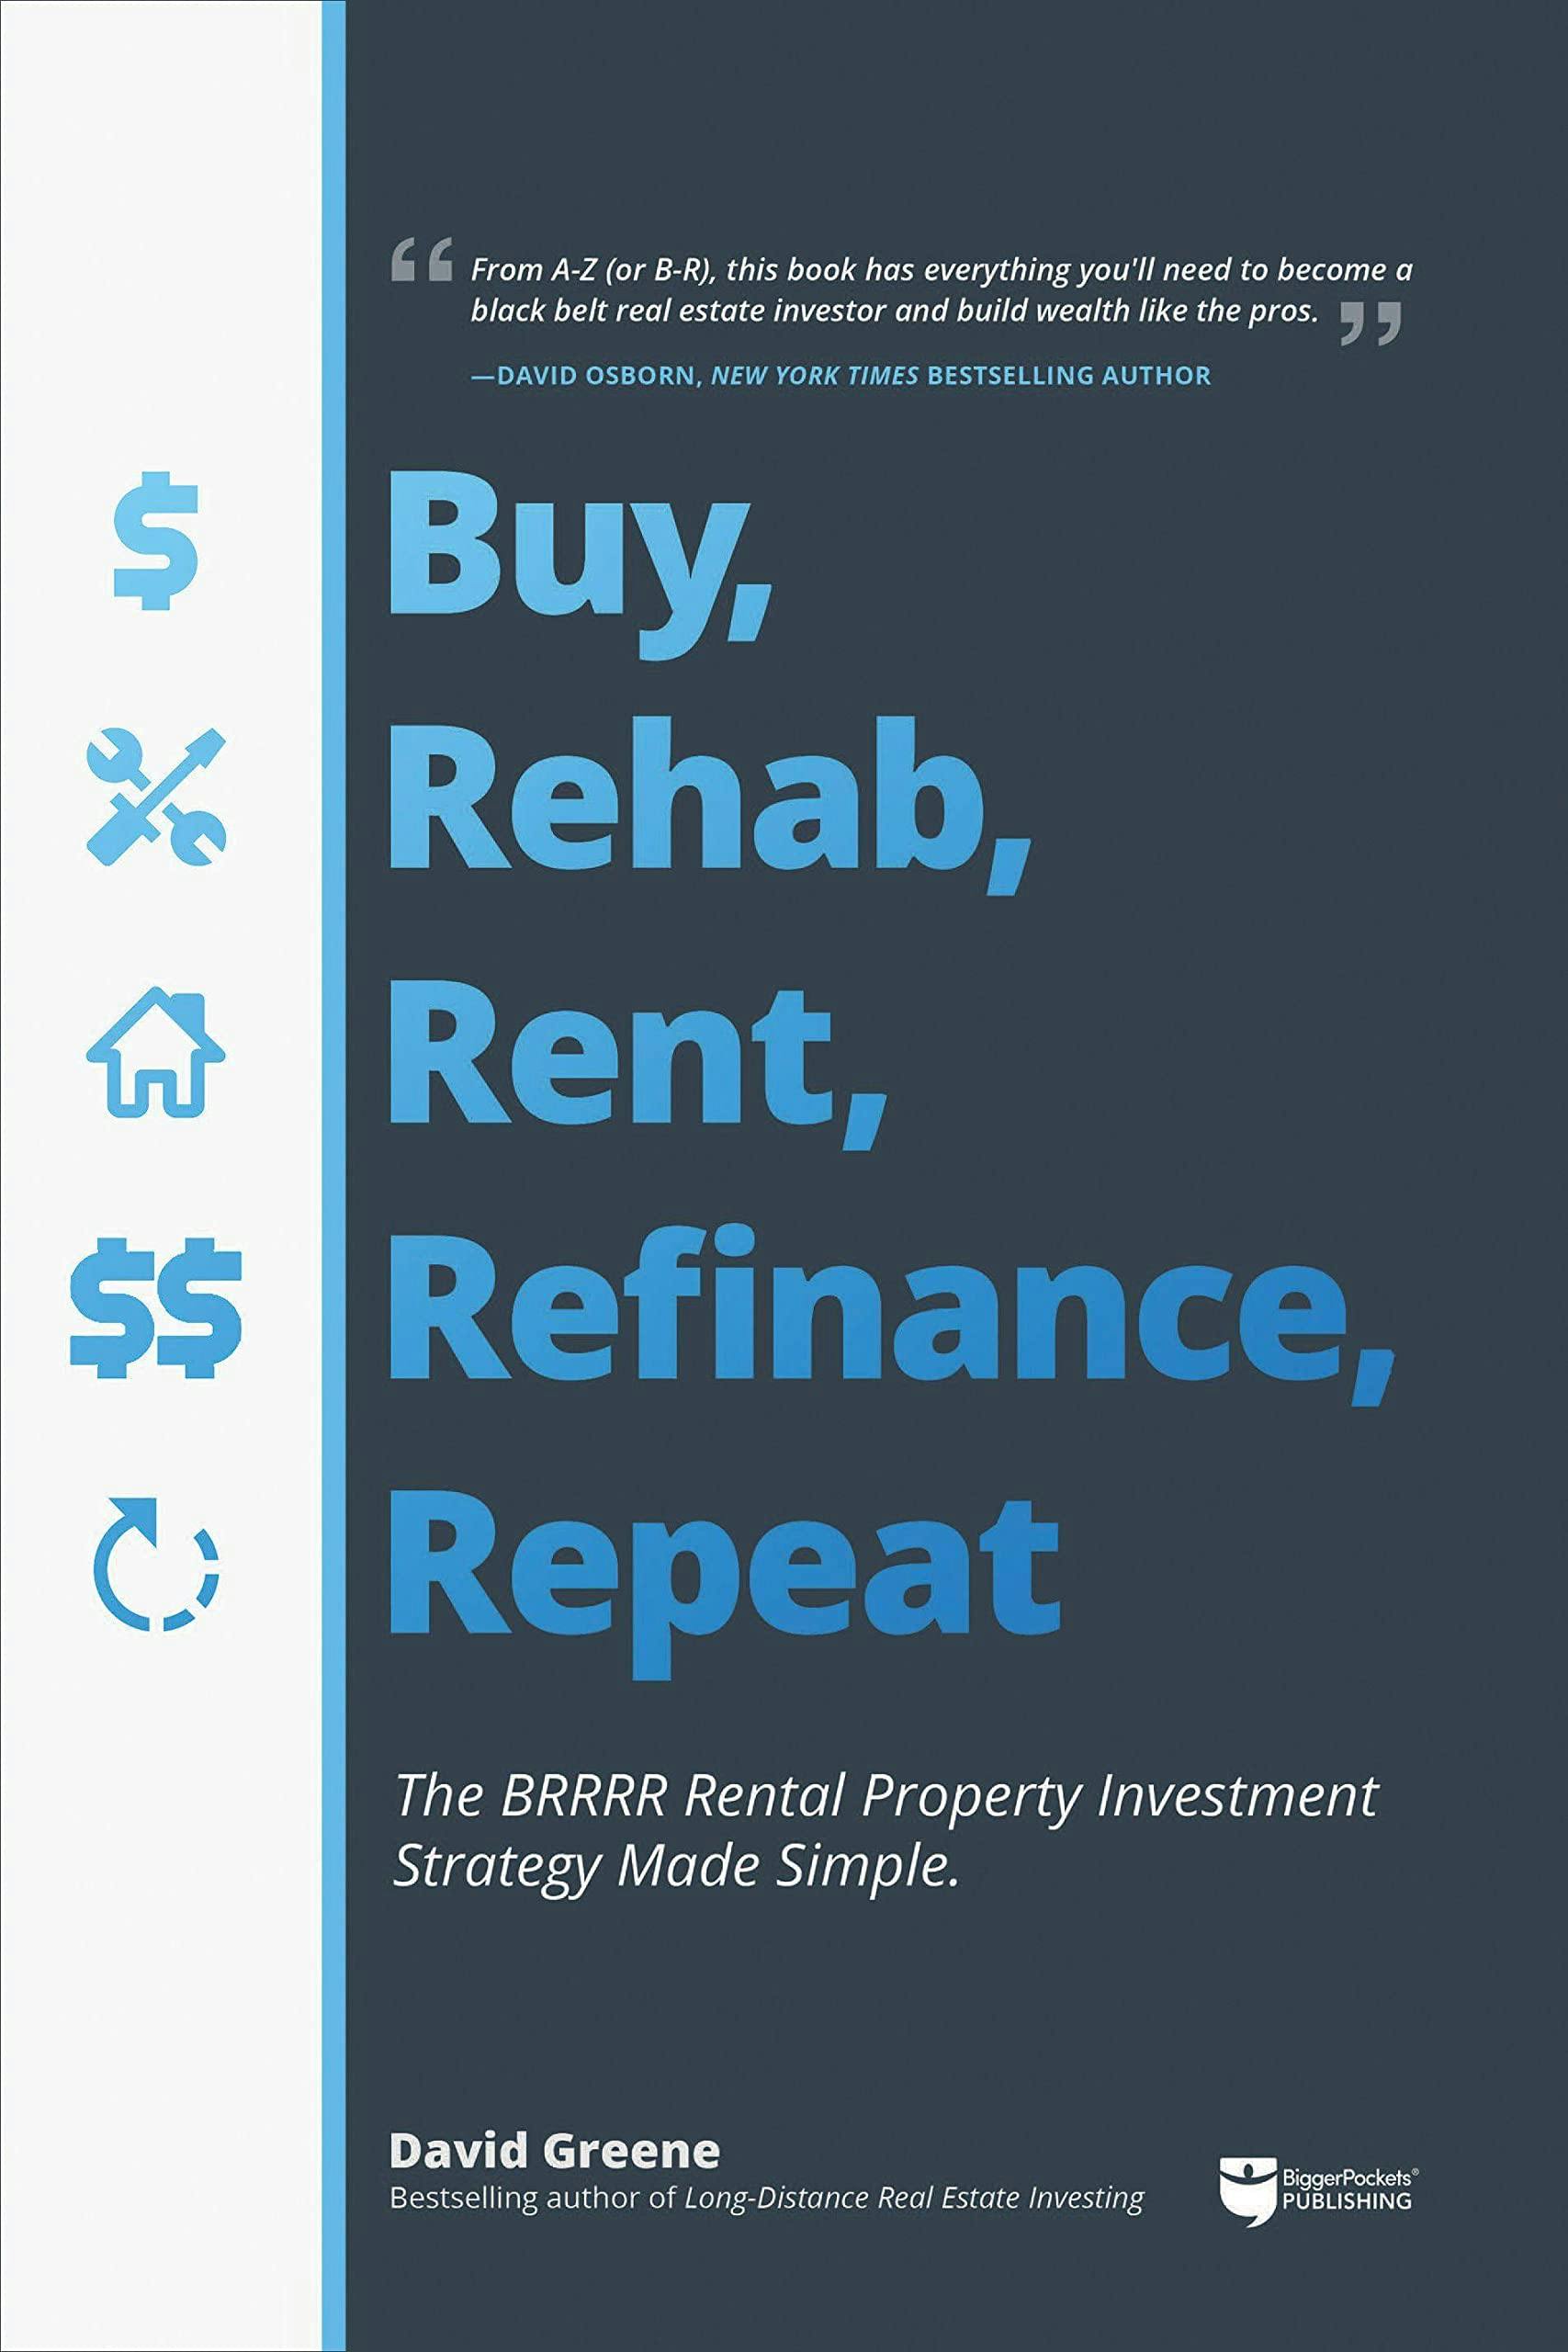 Buy, Rehab, Rent, Refinance, Repeat image